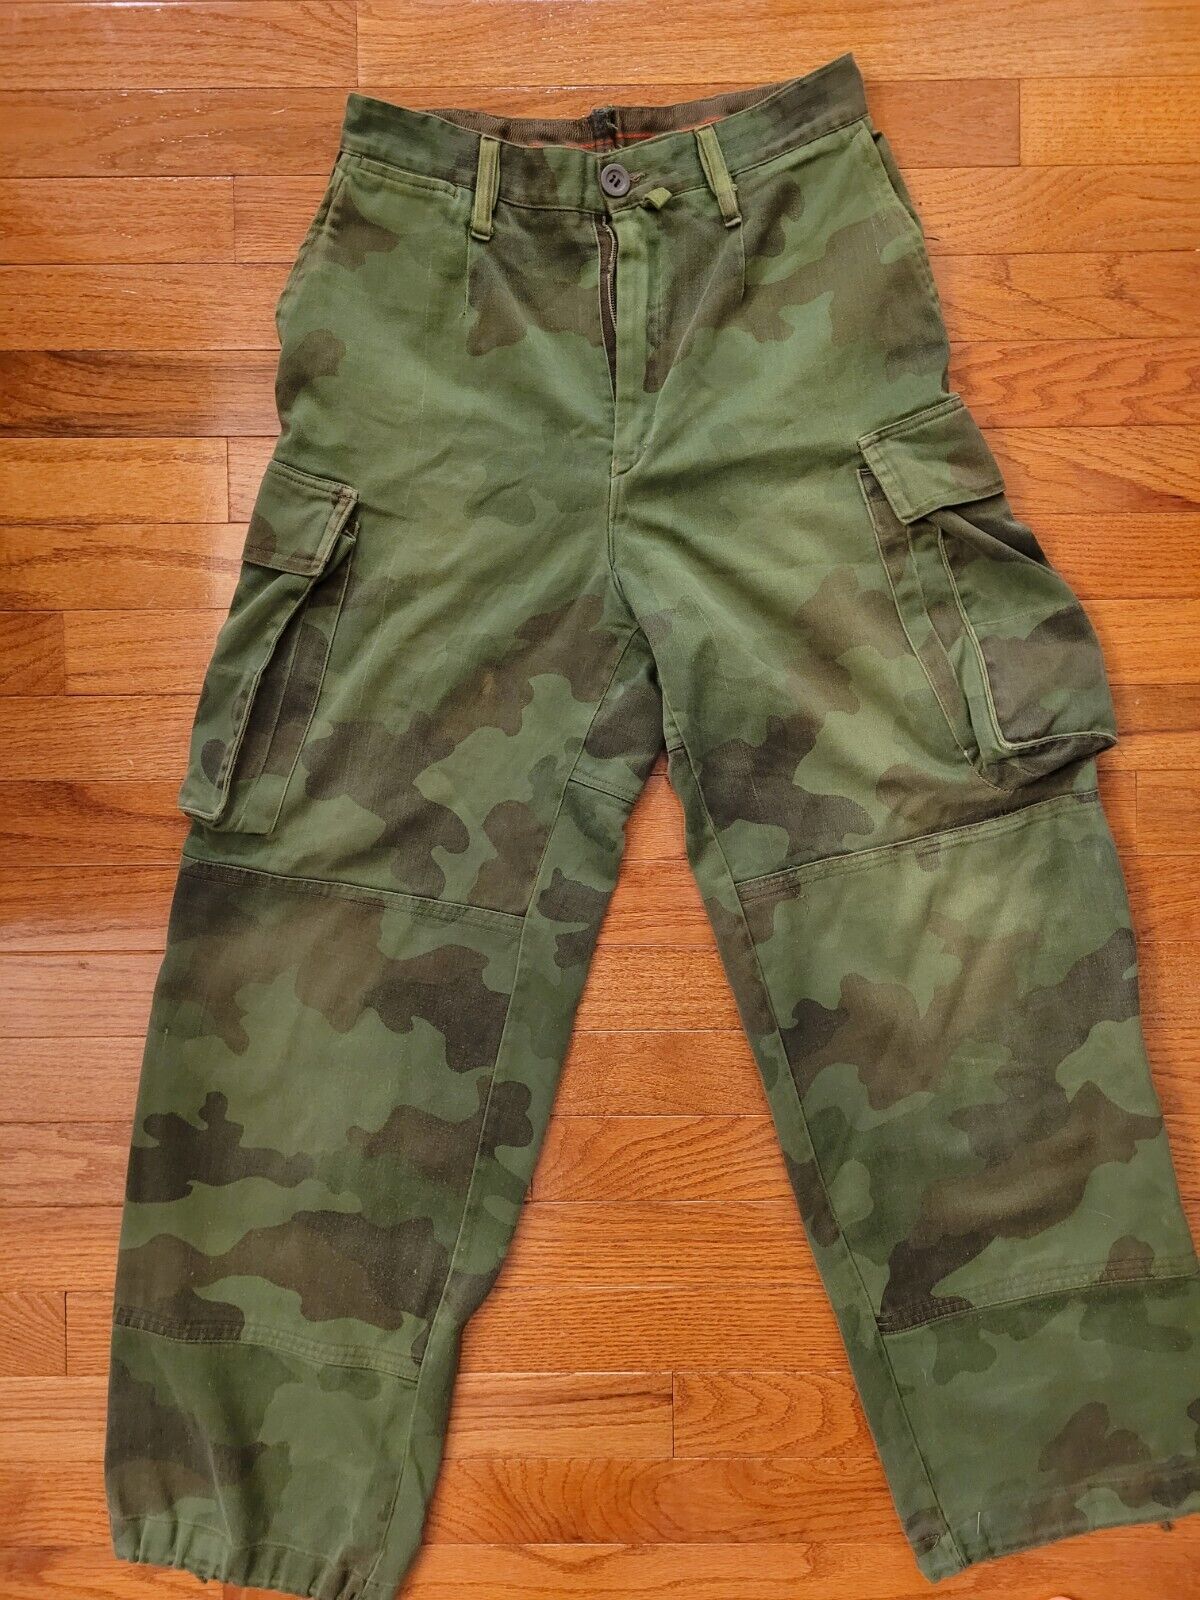 Issued Serbian M93 Oakleaf Pants - 27 in. waist